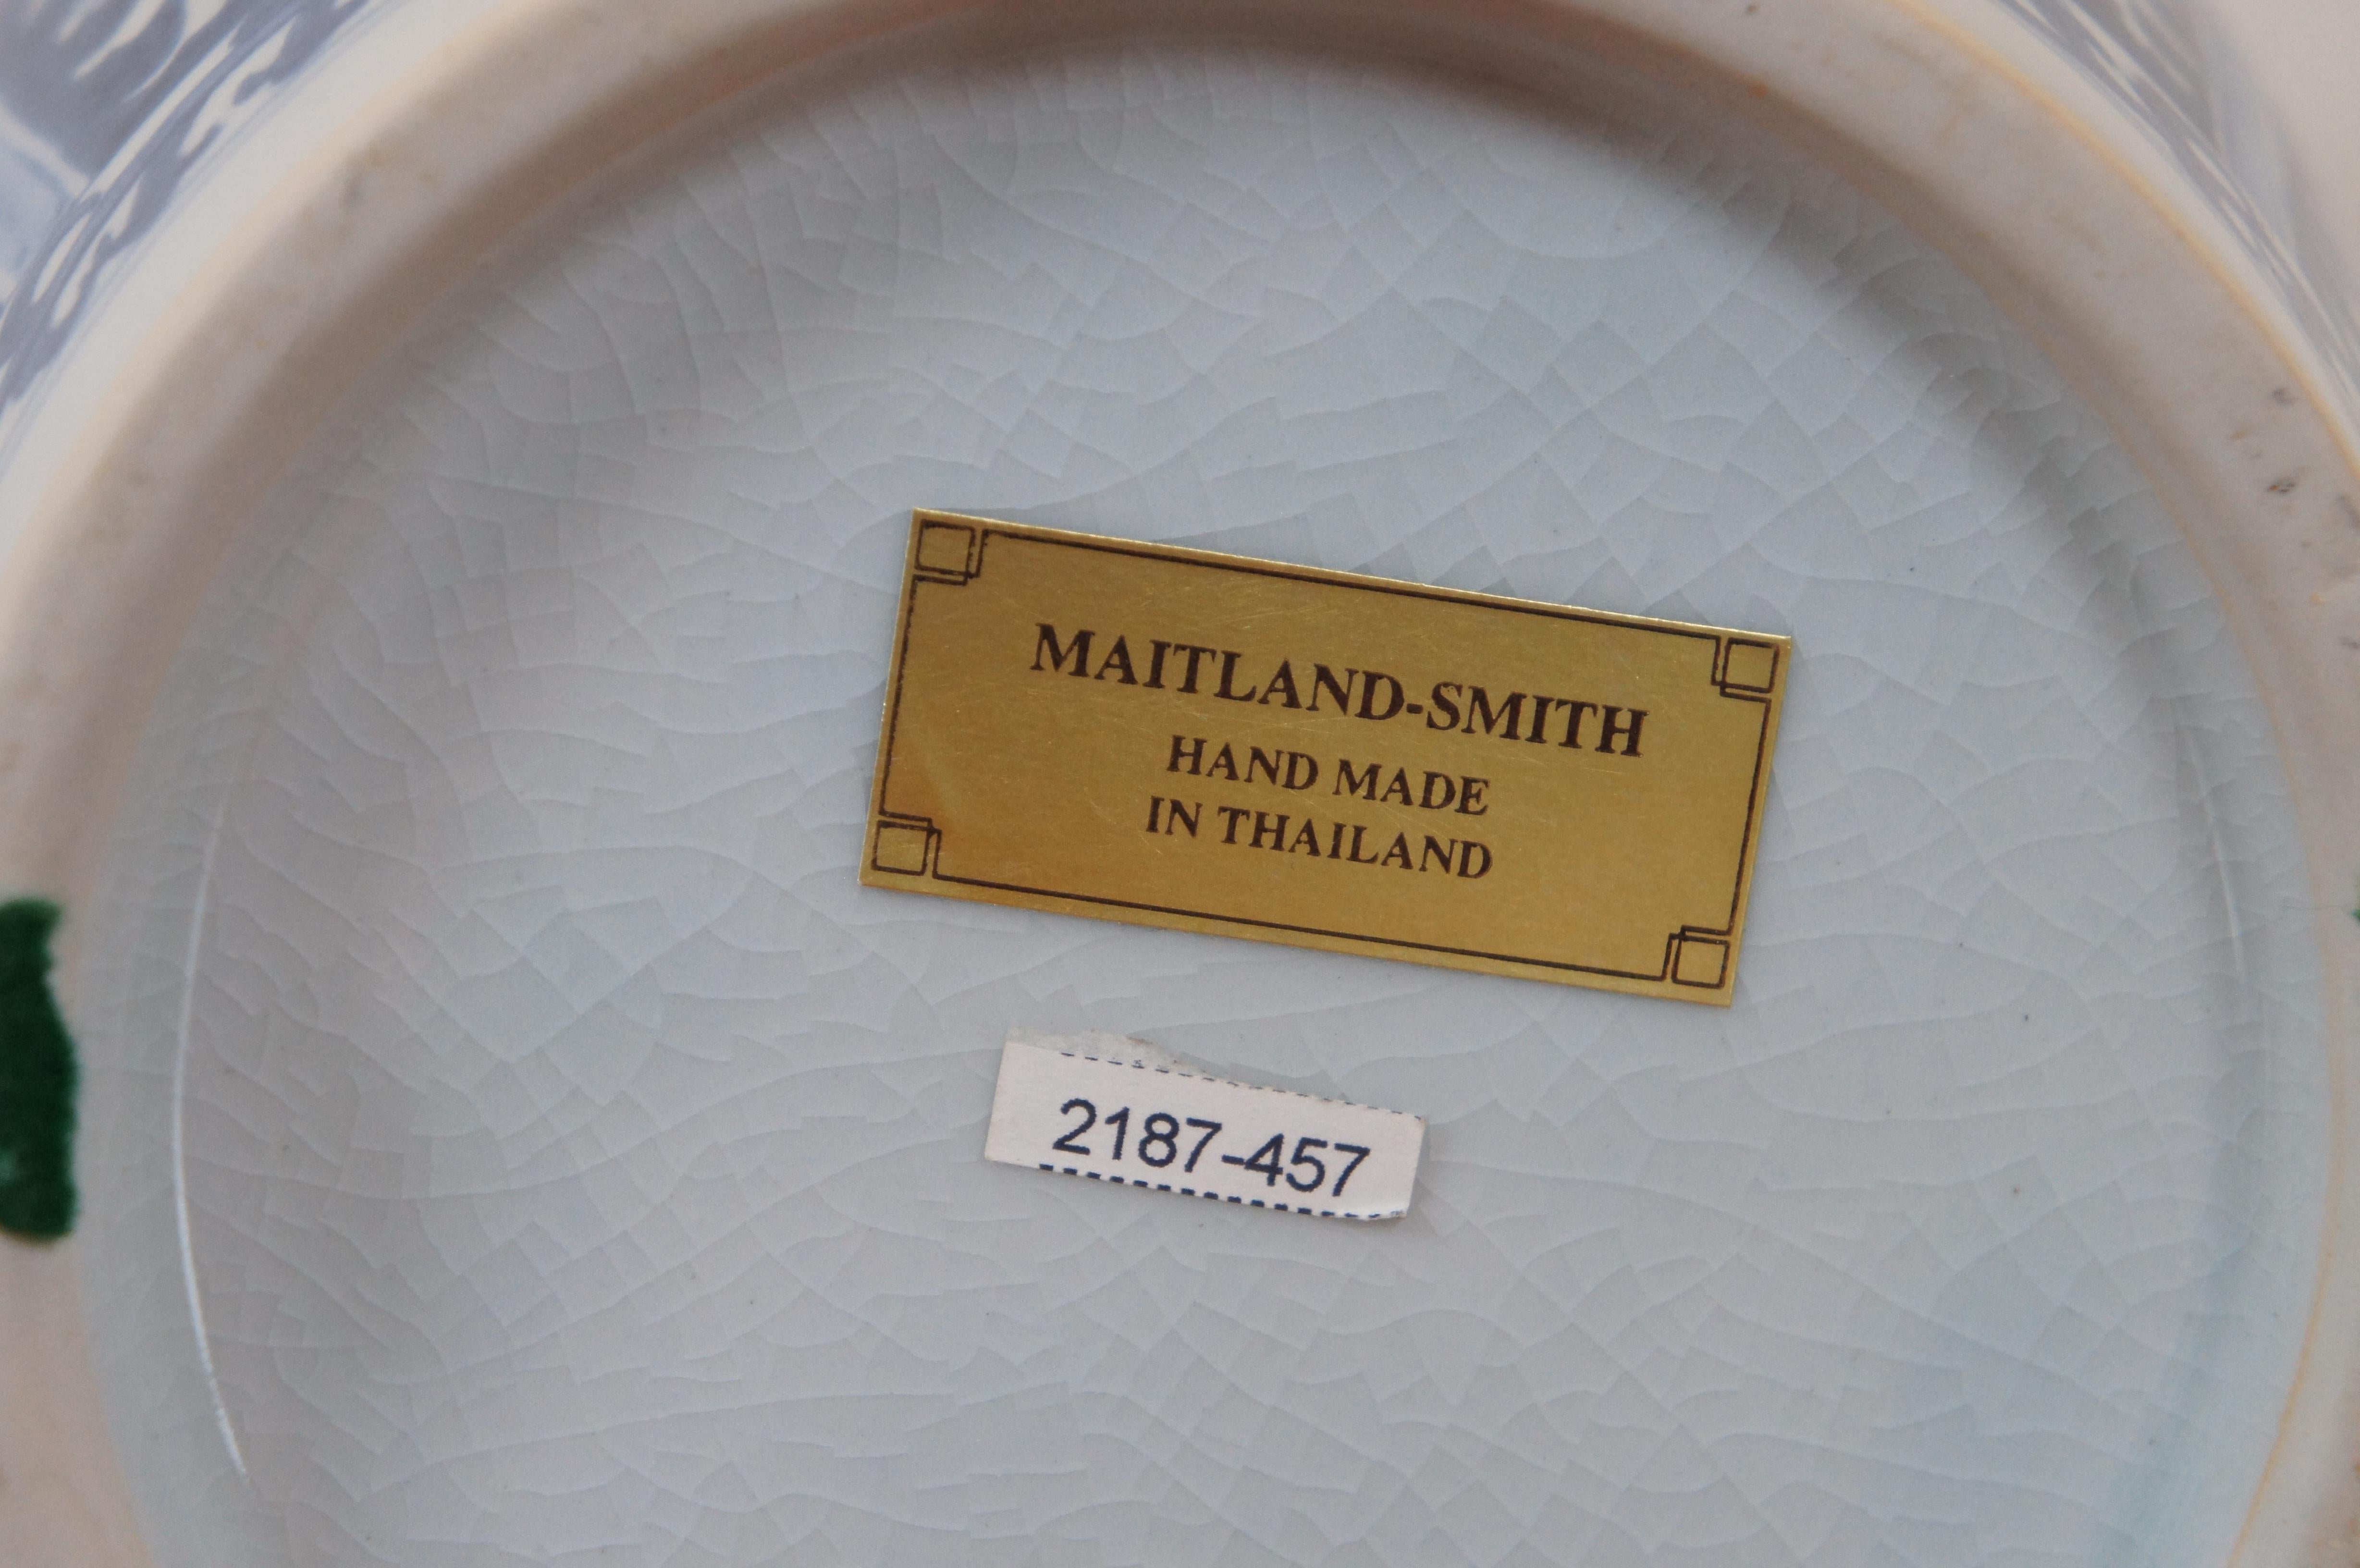 Maitland Smith Blue & White Chinoiserie Porcelain Mantel Vase Flower Urn 15